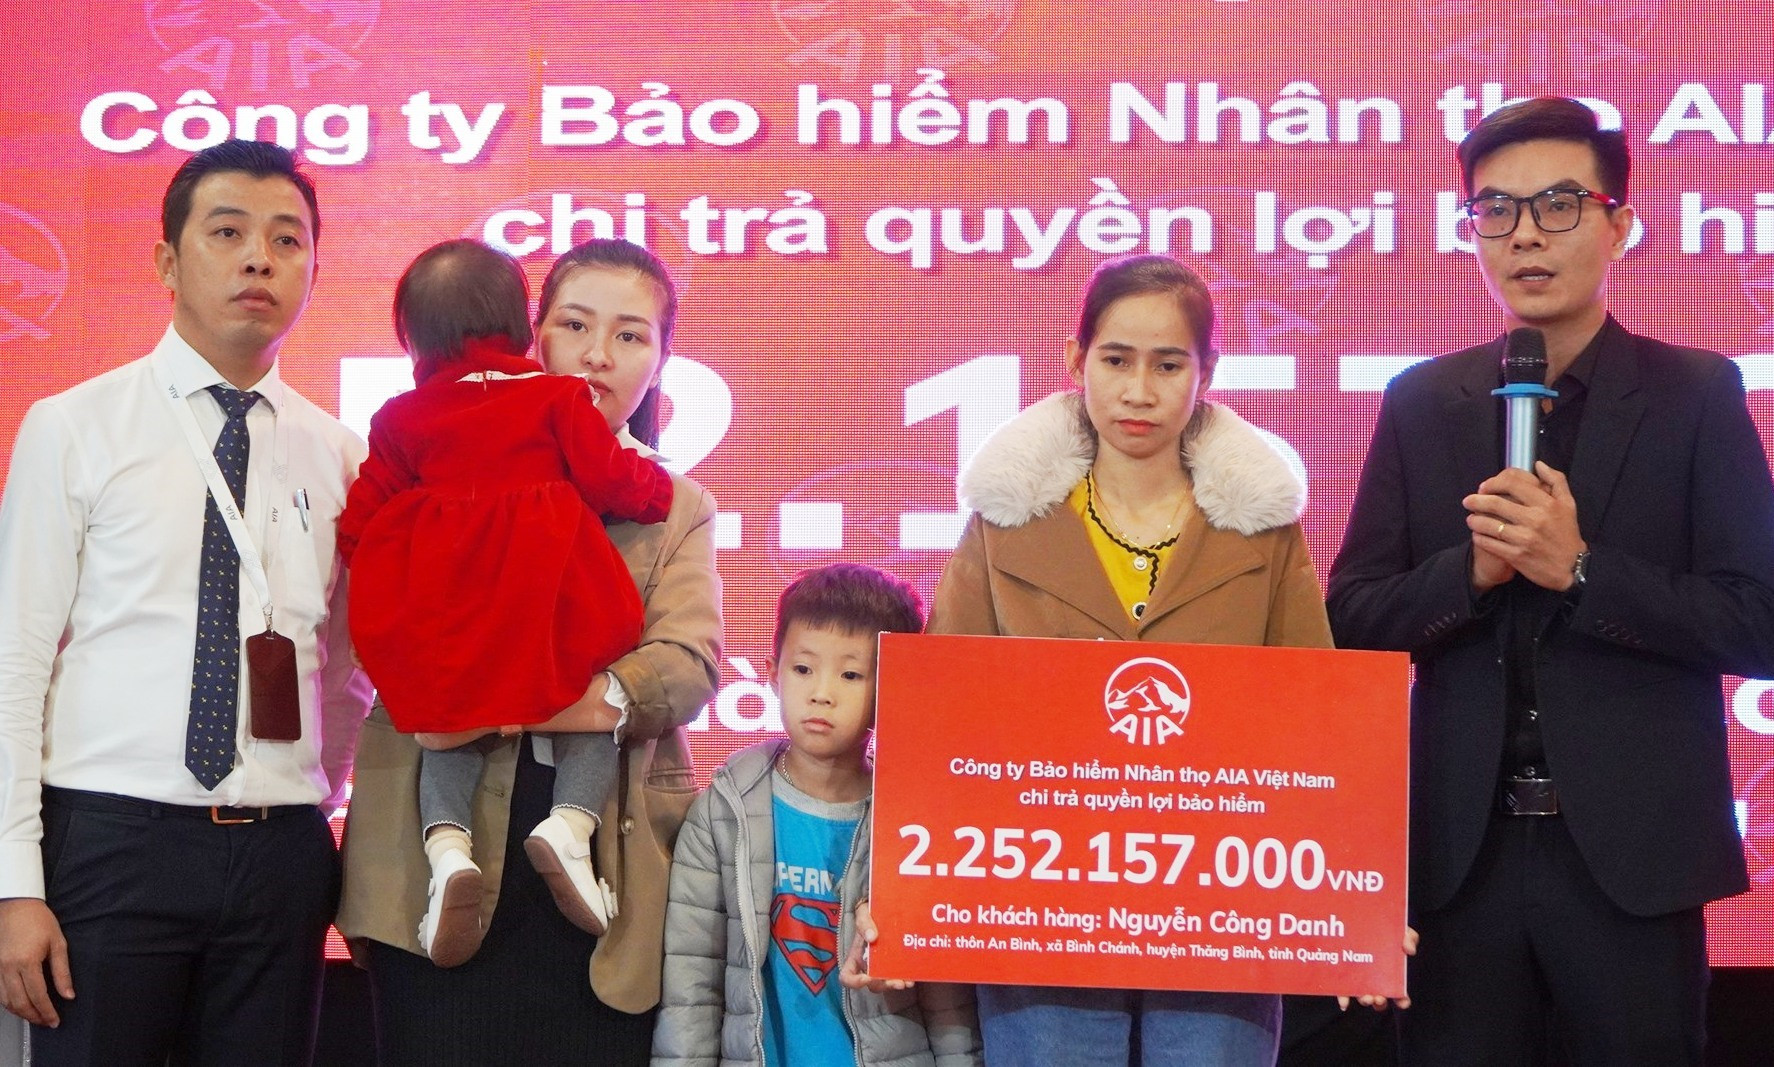 Gia đình nạn nhân nhận khoản chi trả quyền lợi bảo hiểm từ AIA Việt Nam. Ảnh: D.L